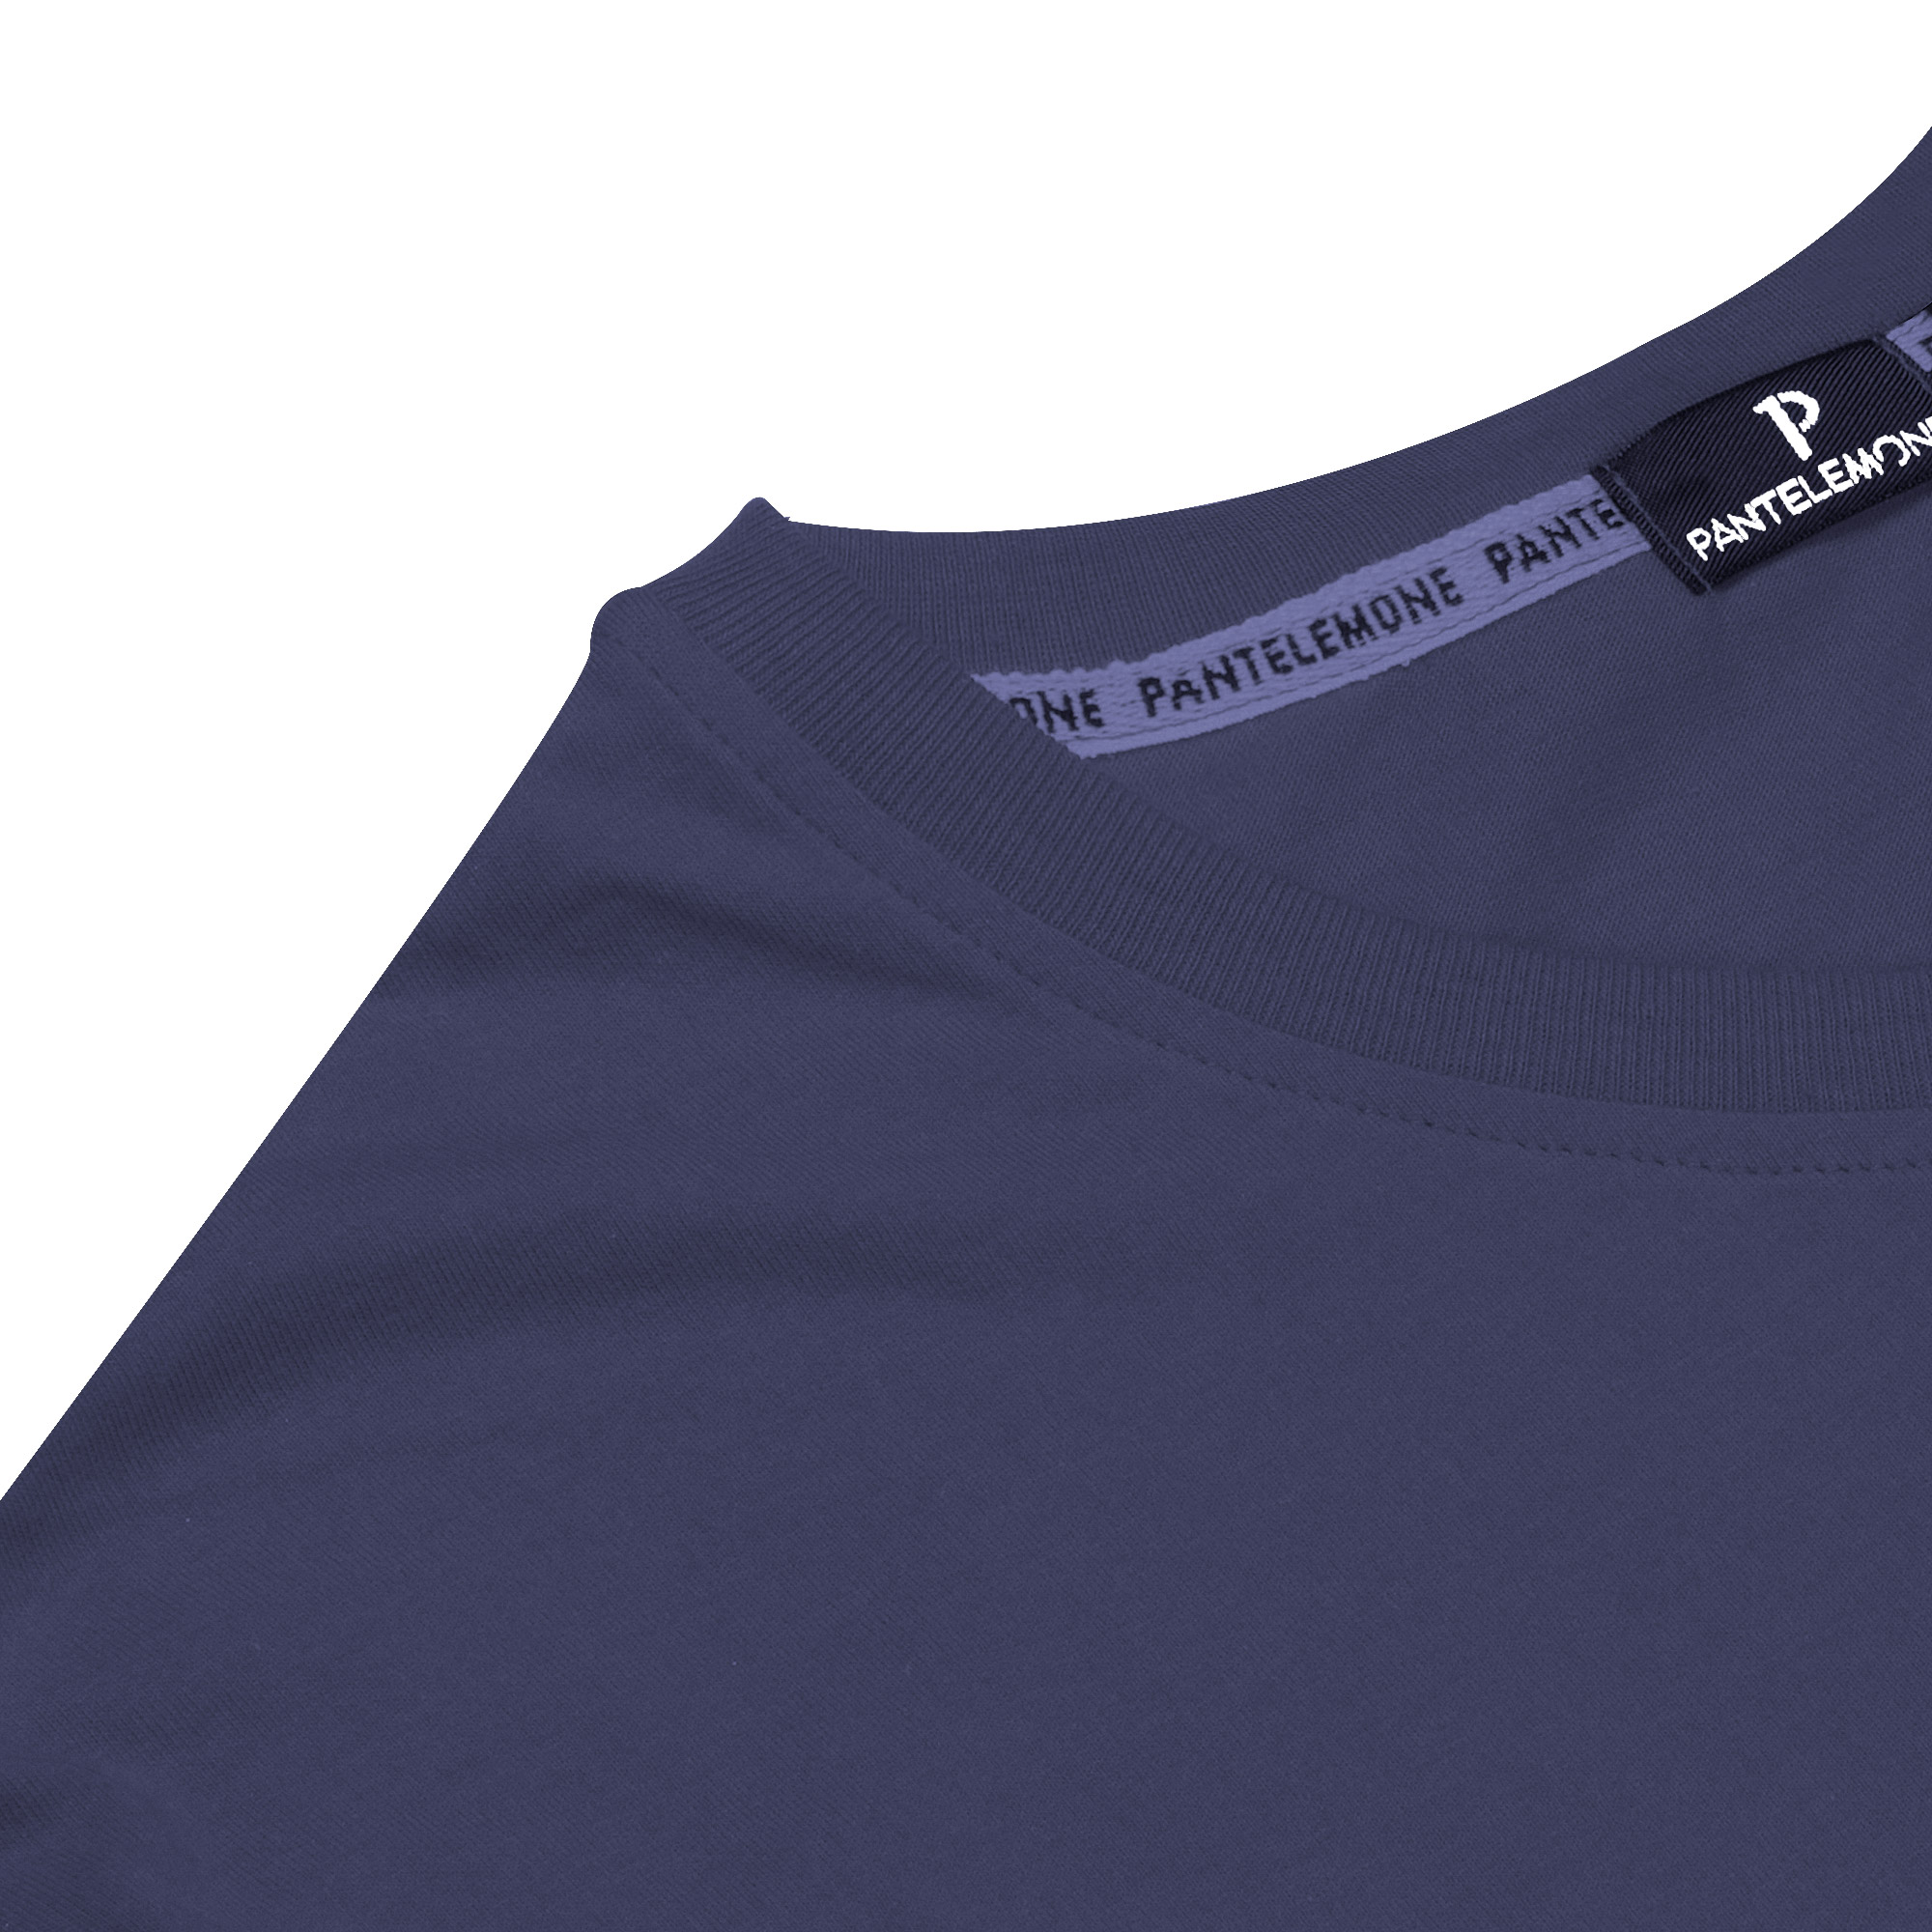 Мужская футболка Pantelemone MF-898 темно-синяя 54, цвет темно-синий, размер 54 - фото 3